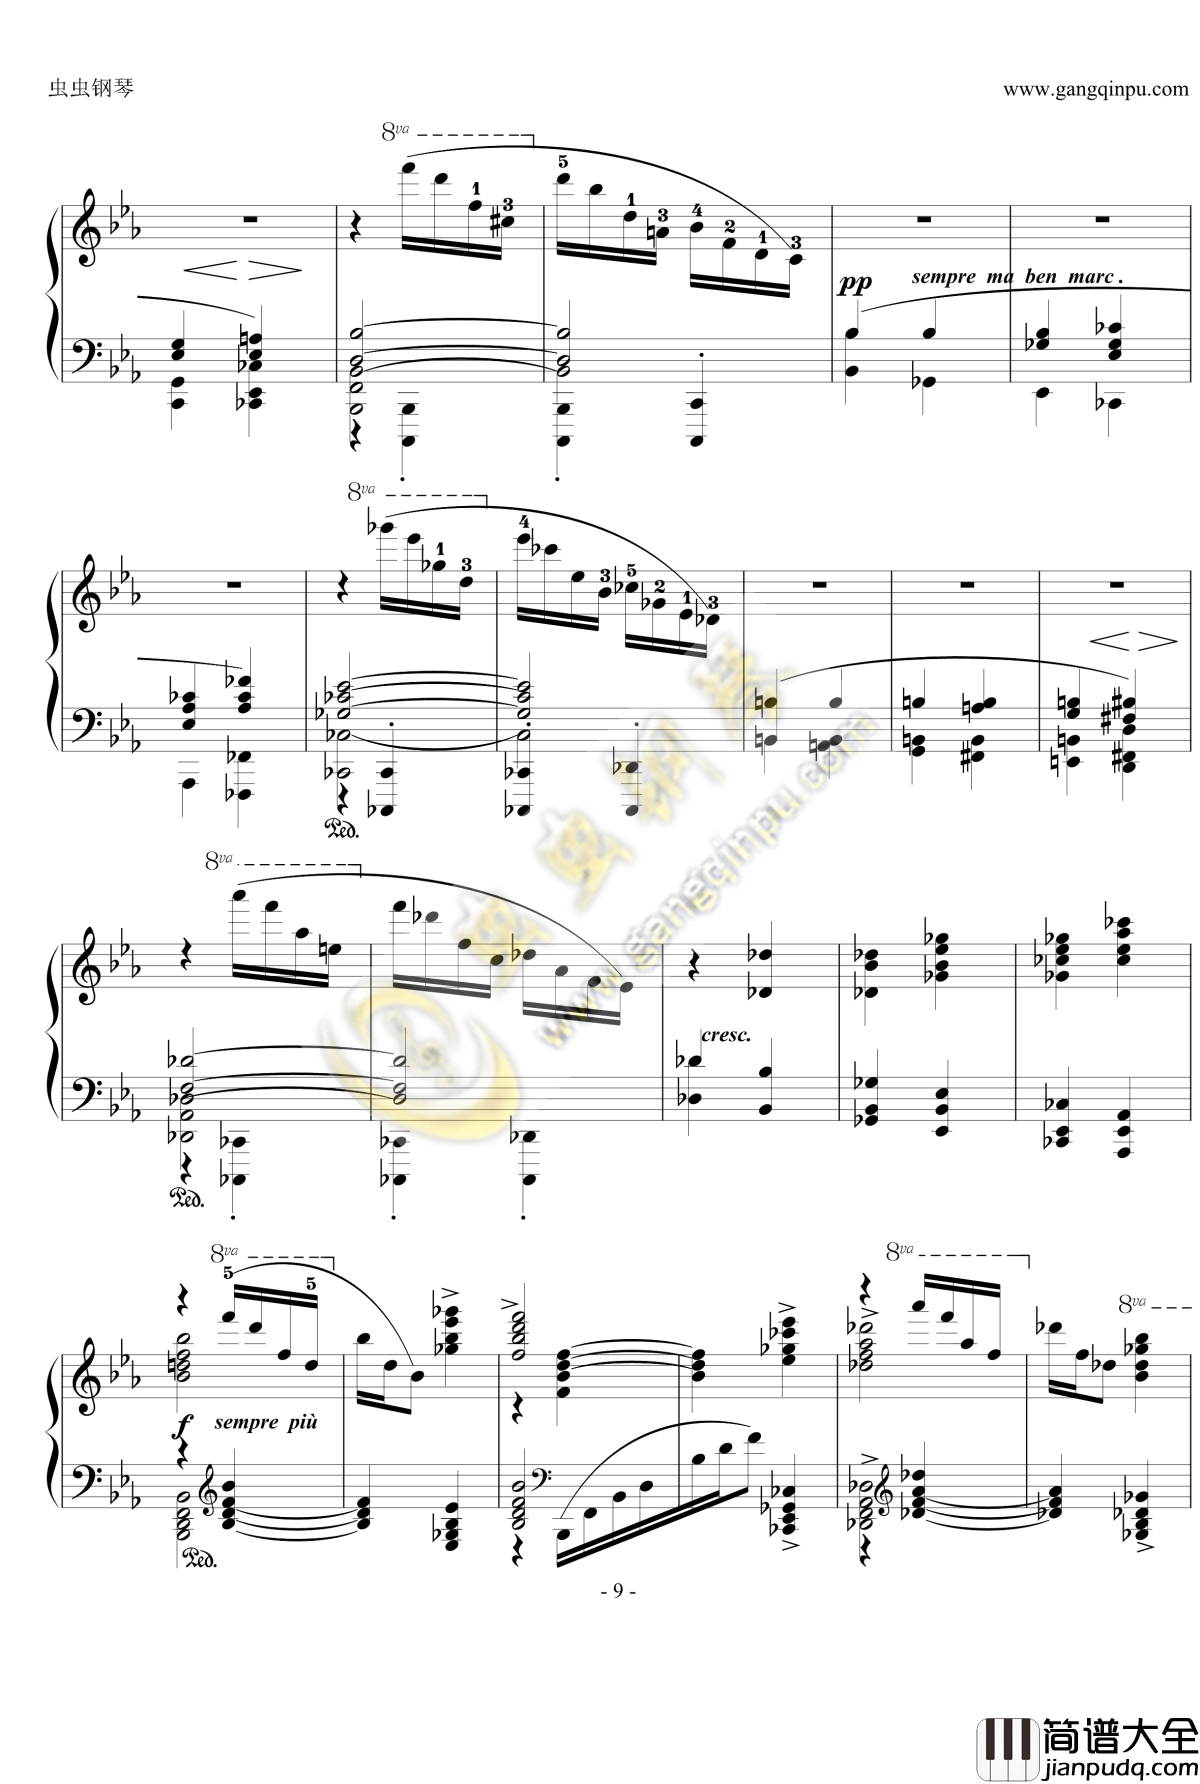 狂想曲Op.119__No.4钢琴谱_勃拉姆斯_Brahms